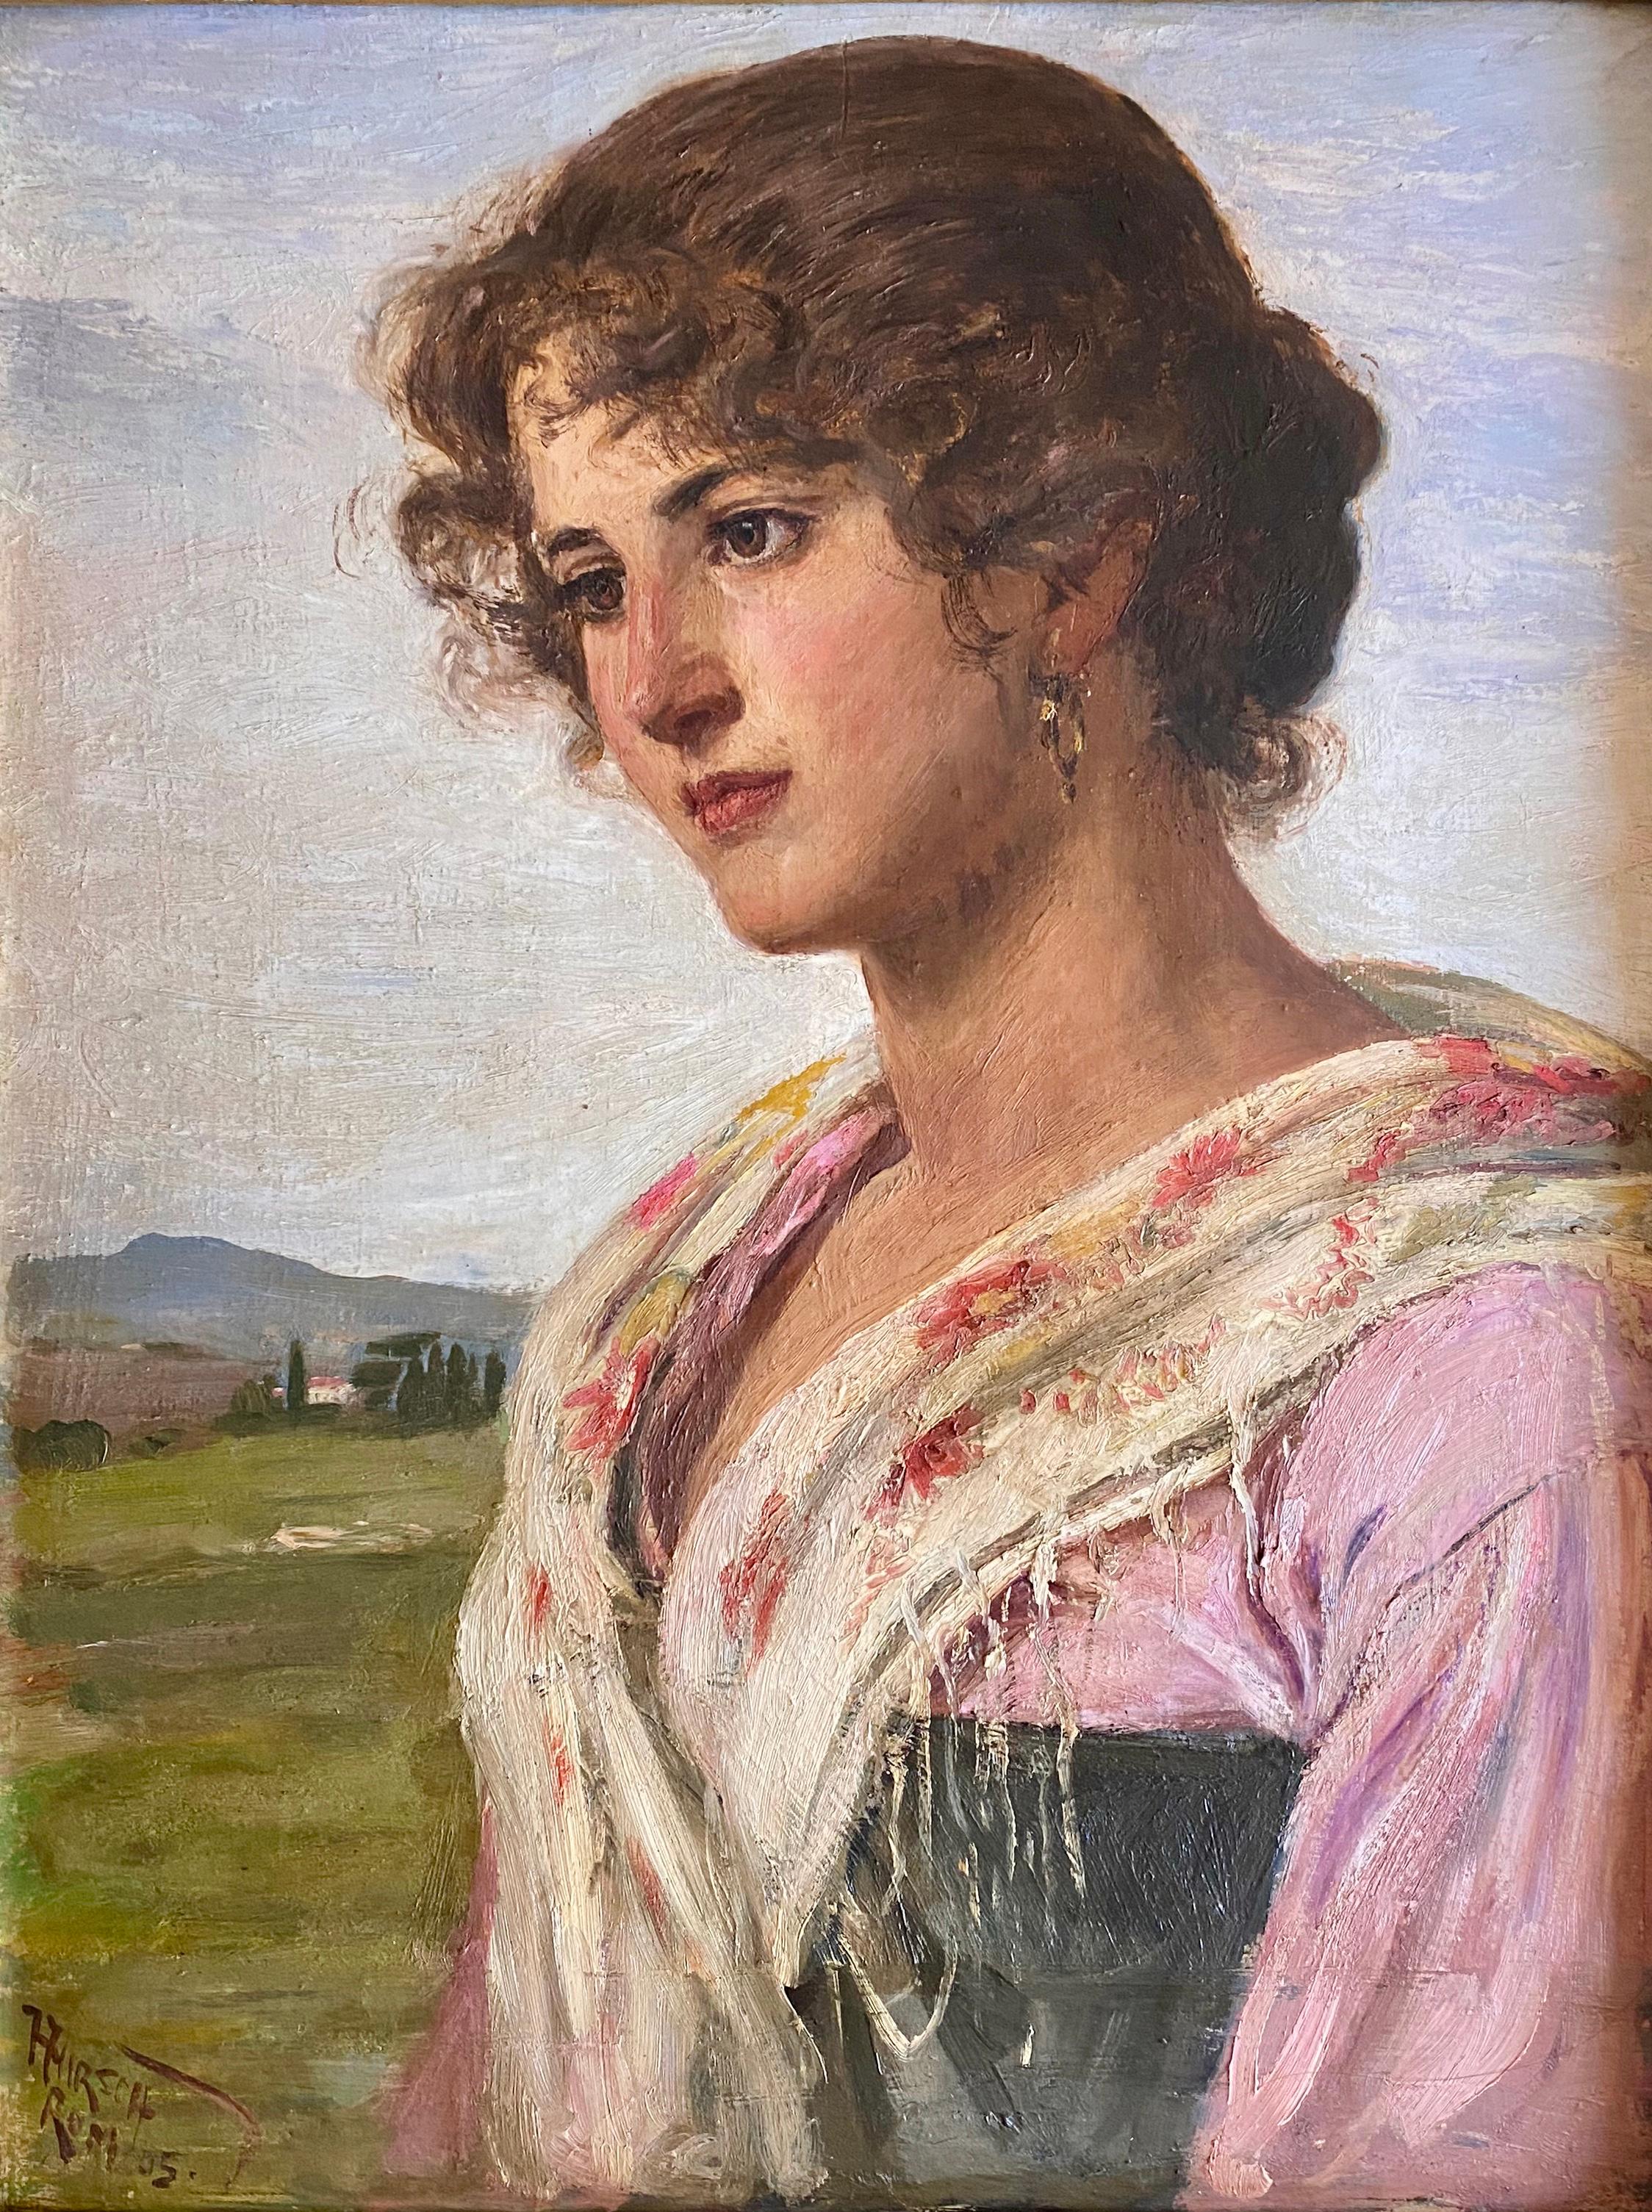 Best of Europe:La jeune fille romaine Portrait sensible d'une jeune femme Italie - Painting de Hermann Hirsch